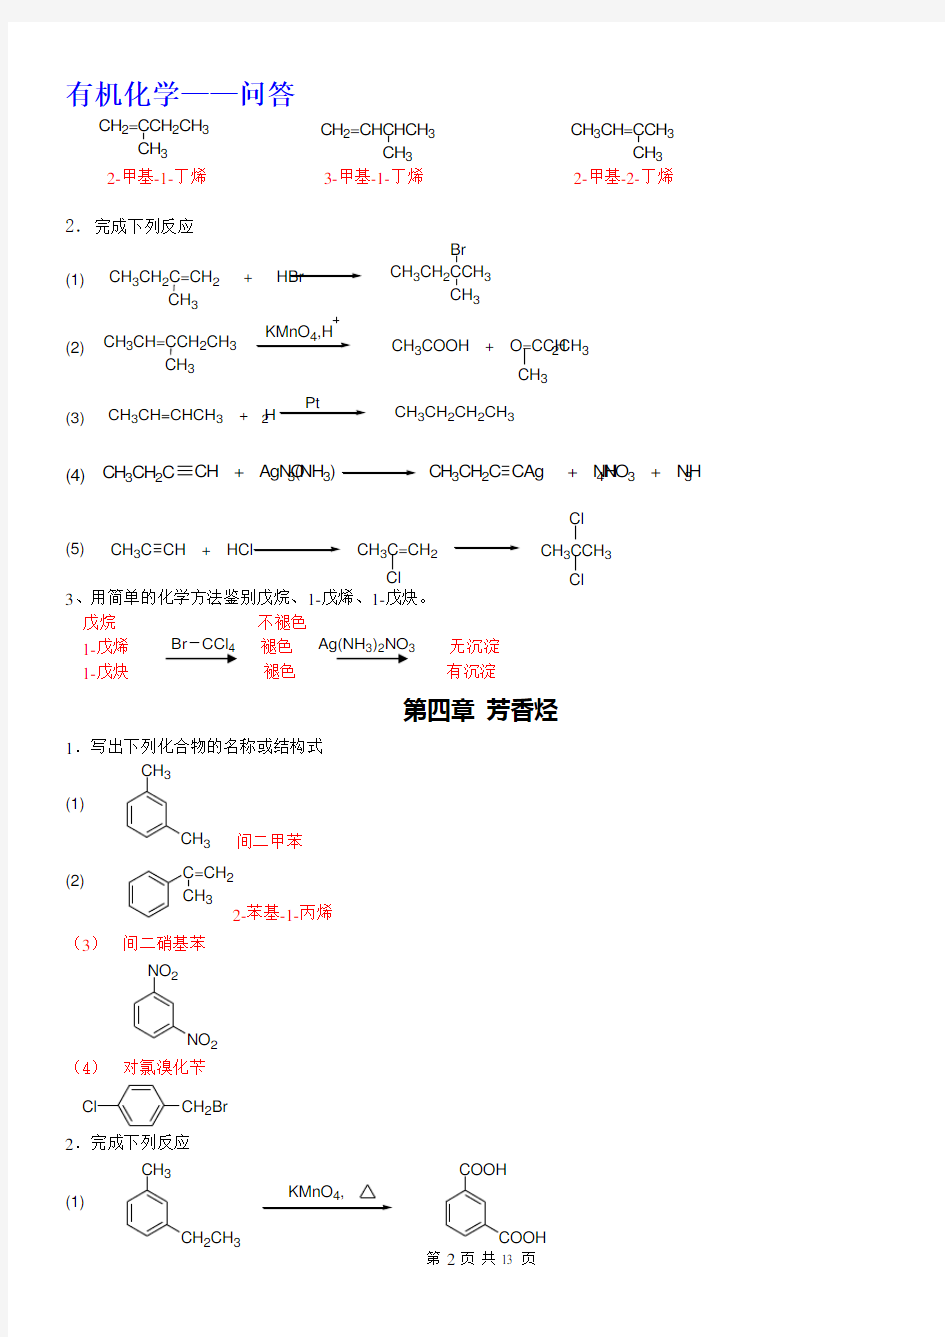 郑州大学远程教育  有机化学(问答题)